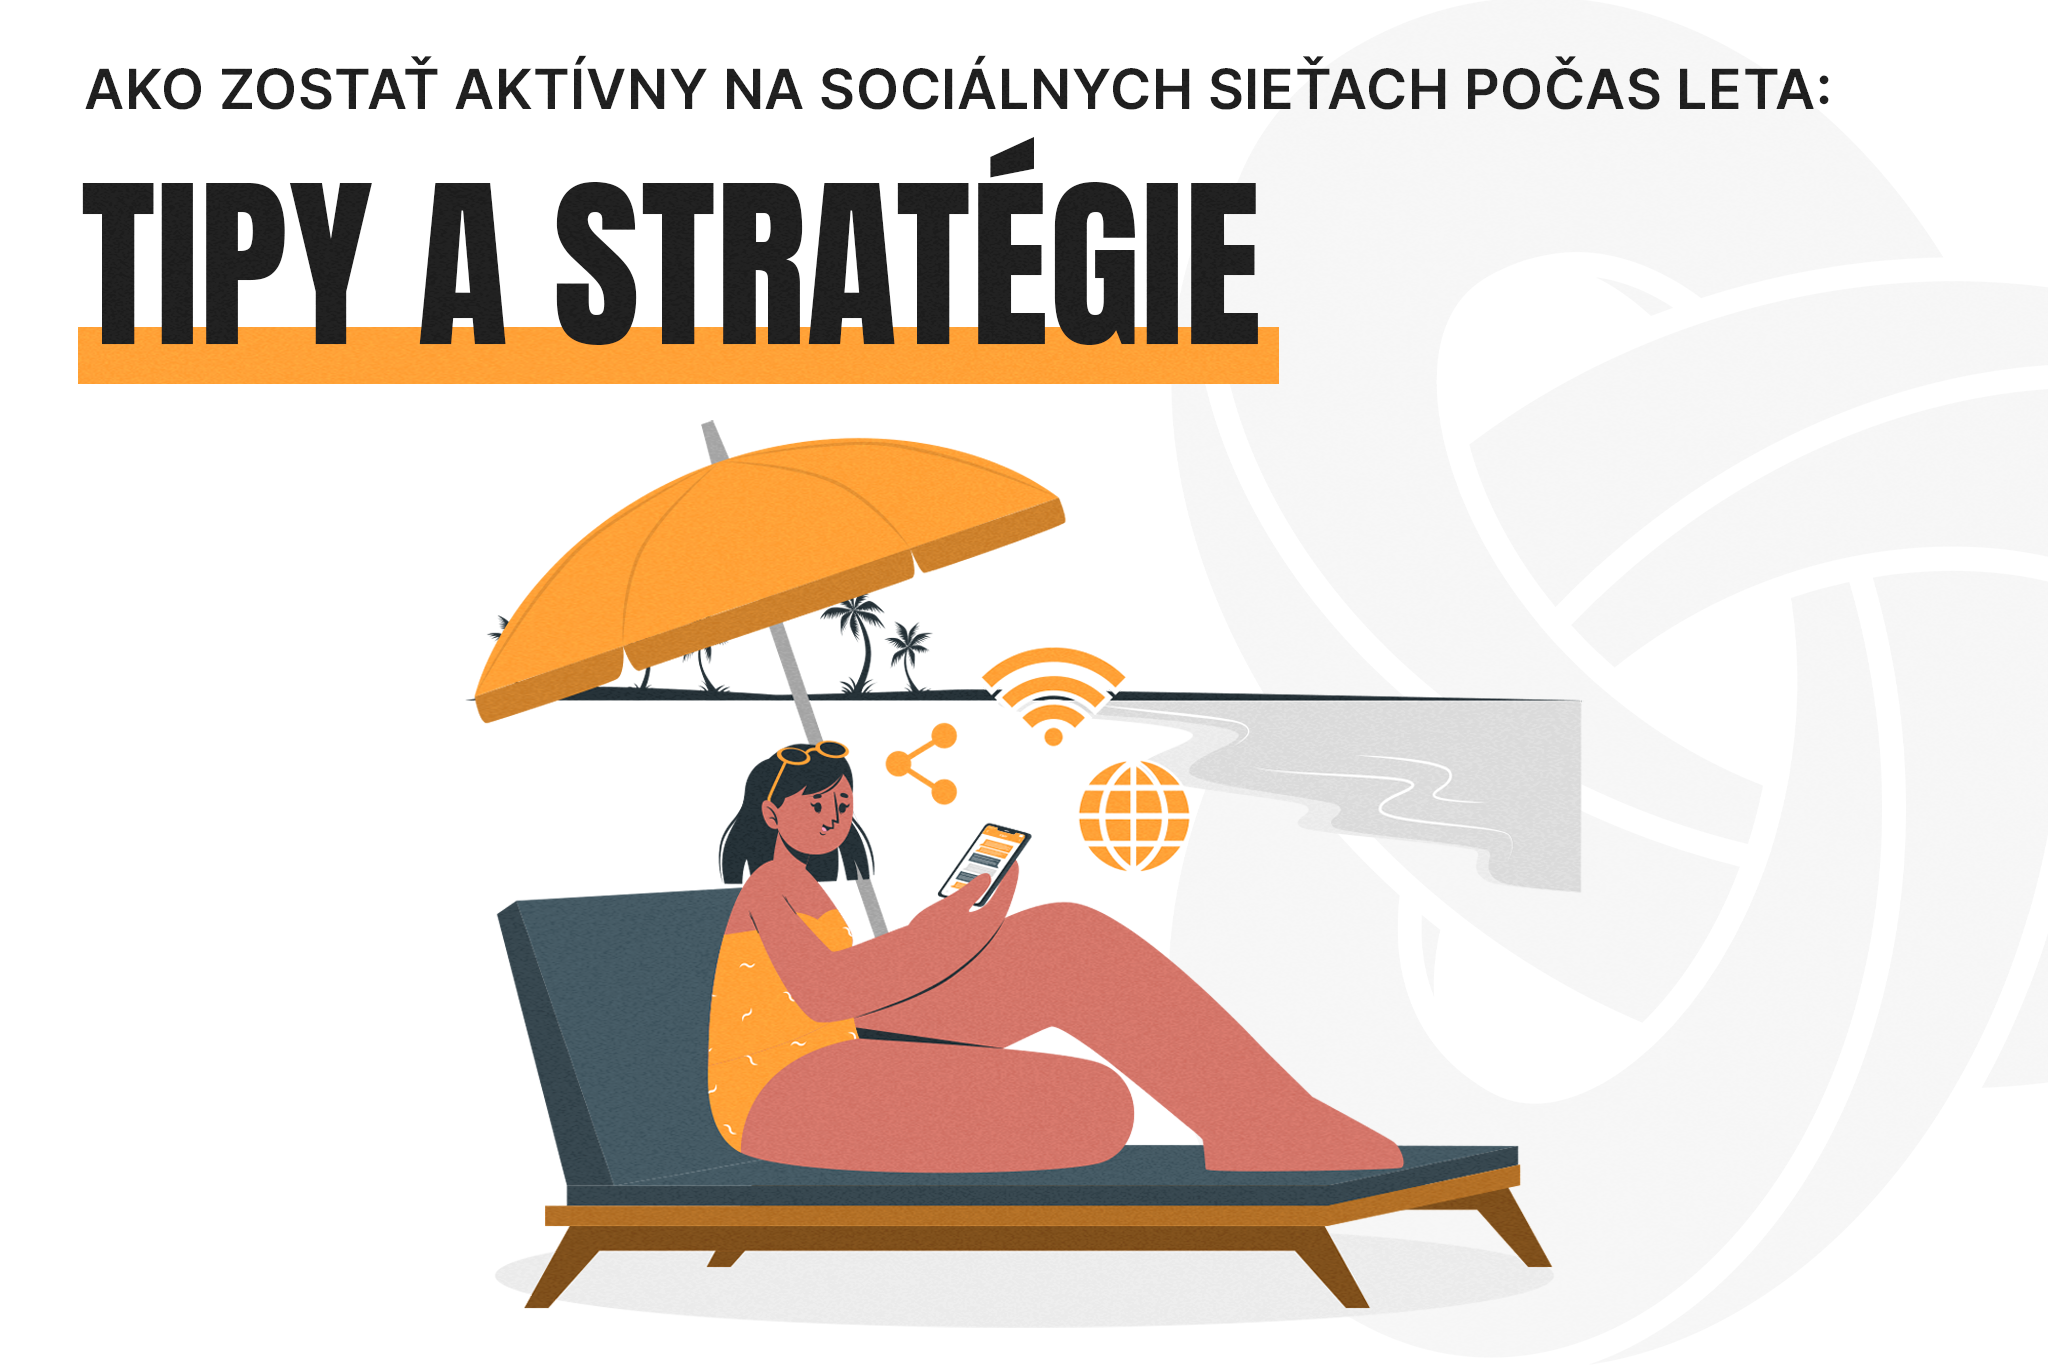 Ako zostať aktívny na sociálnych sieťach počas leta: Tipy a stratégie